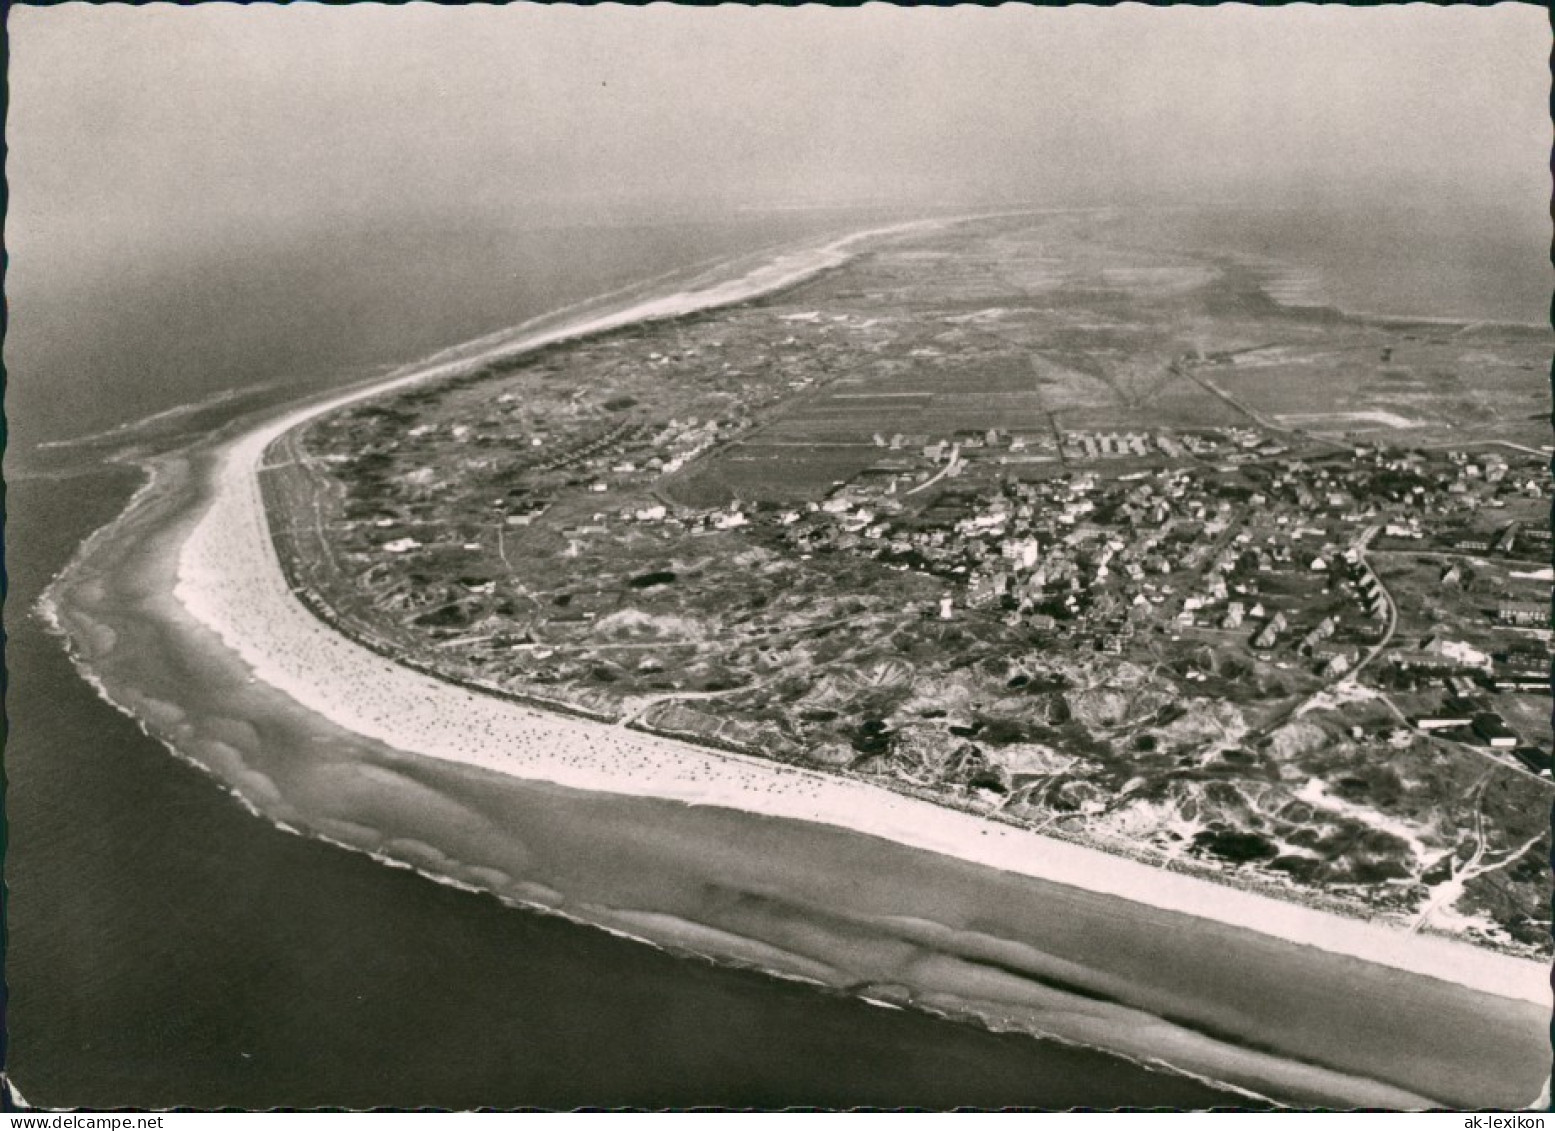 Ansichtskarte Langeoog Luftbild Luftaufnahme Insel Gesamtansicht Nordsee 1965 - Langeoog